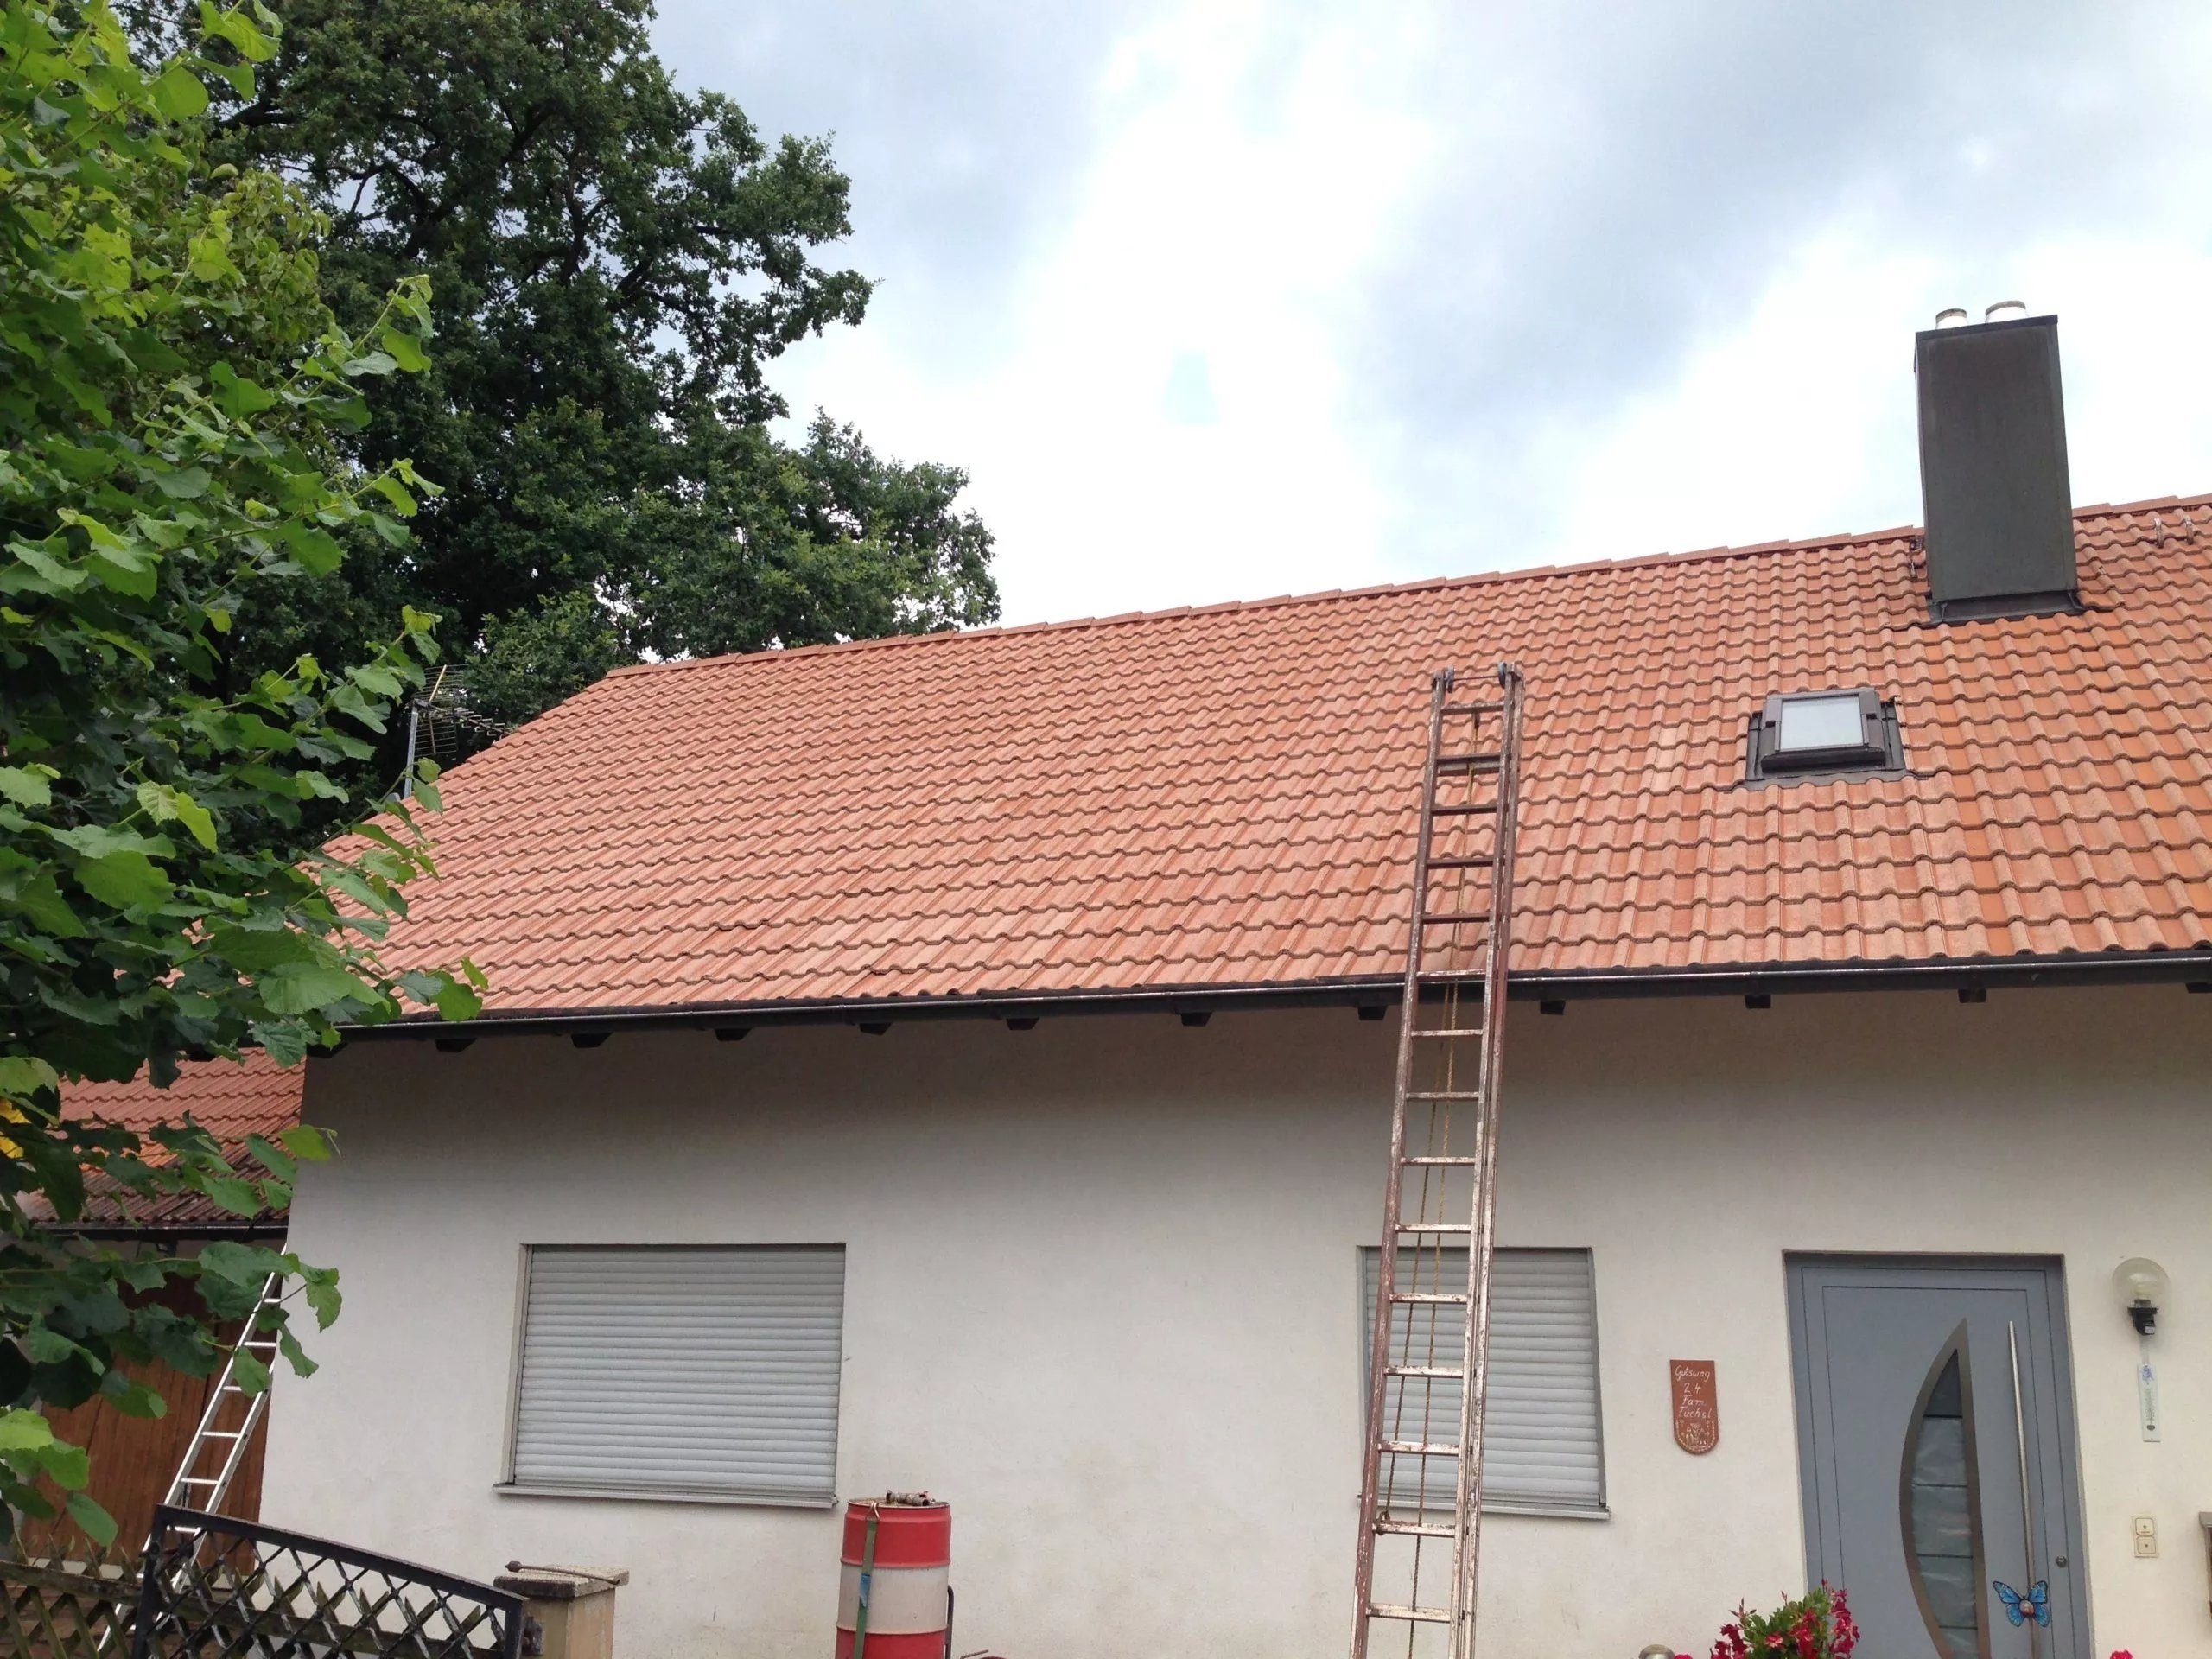 Czyszczenie dachów z powłoką dachową 5 betondachsteine nach der reinigung scaled